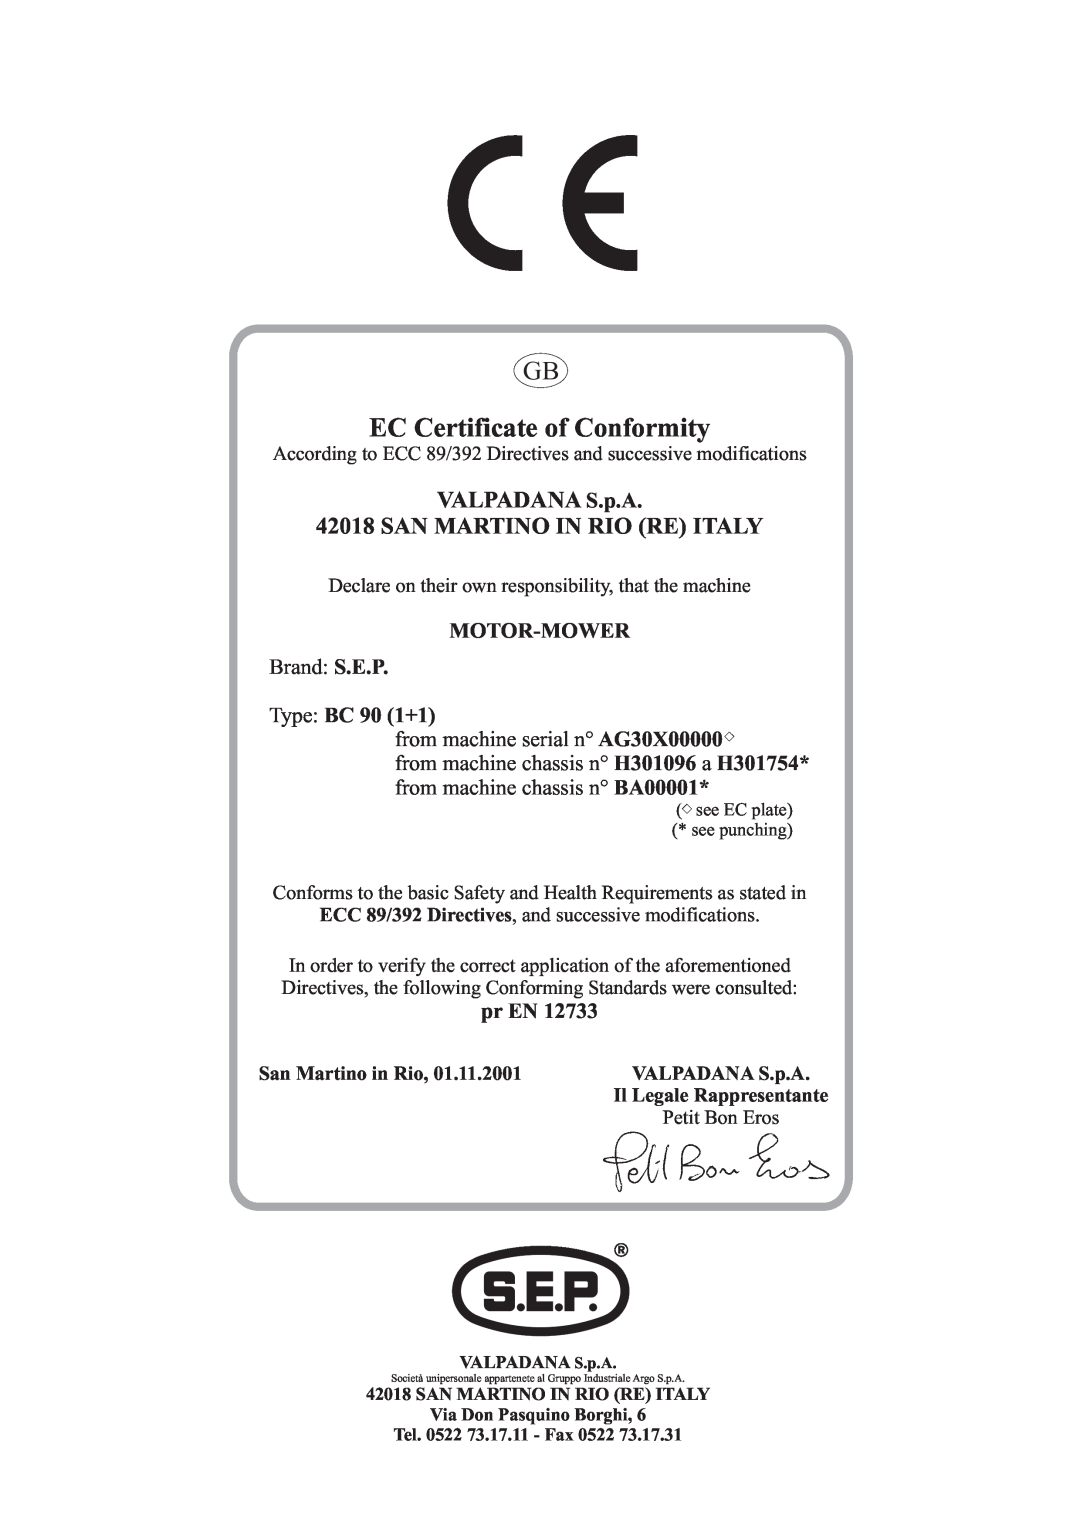 S.E.P BC90(1+1) EC Certificate of Conformity, VALPADANA S.p.A 42018 SAN MARTINO IN RIO RE ITALY, Motor-Mower, Brand S.E.P 